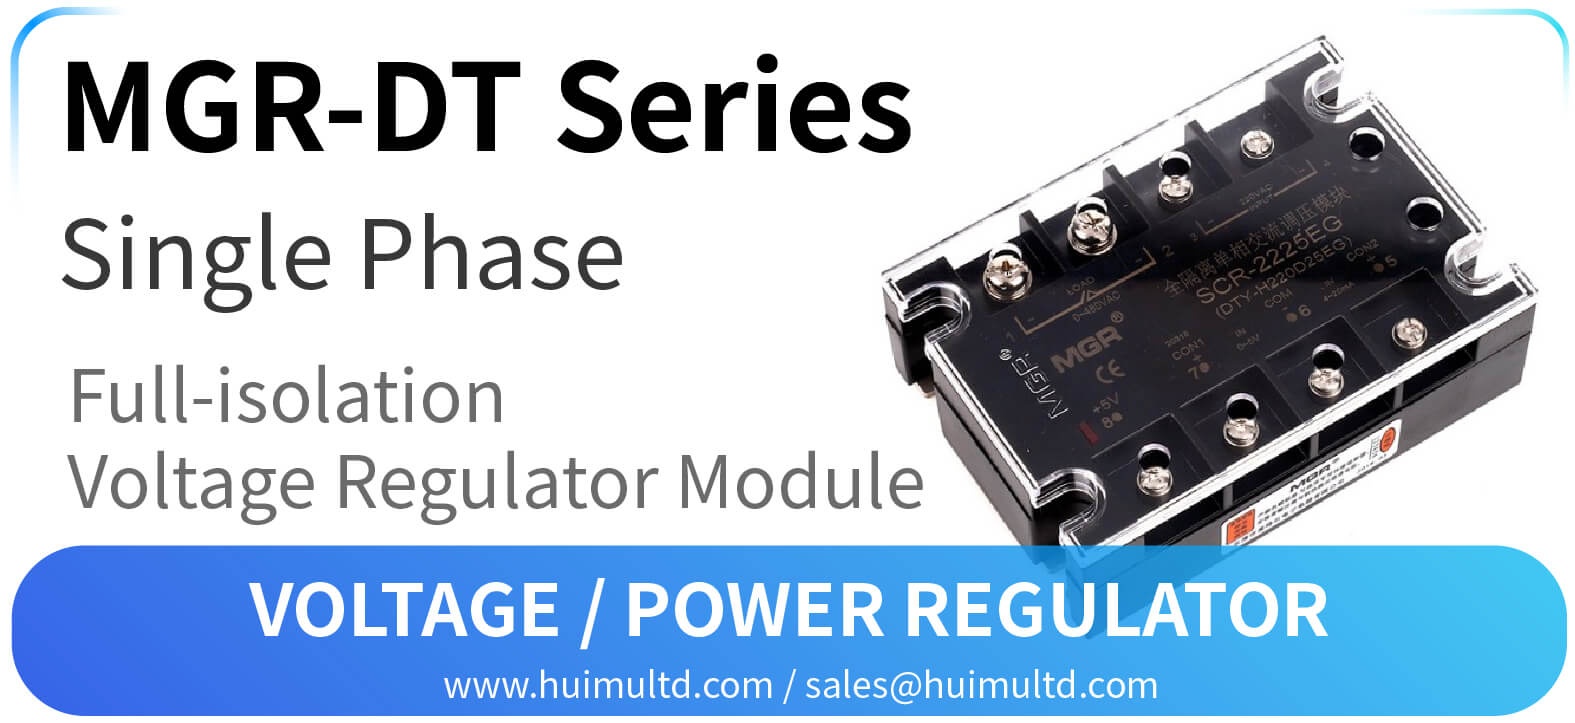 MGR-DT Series Voltage Power Regulator